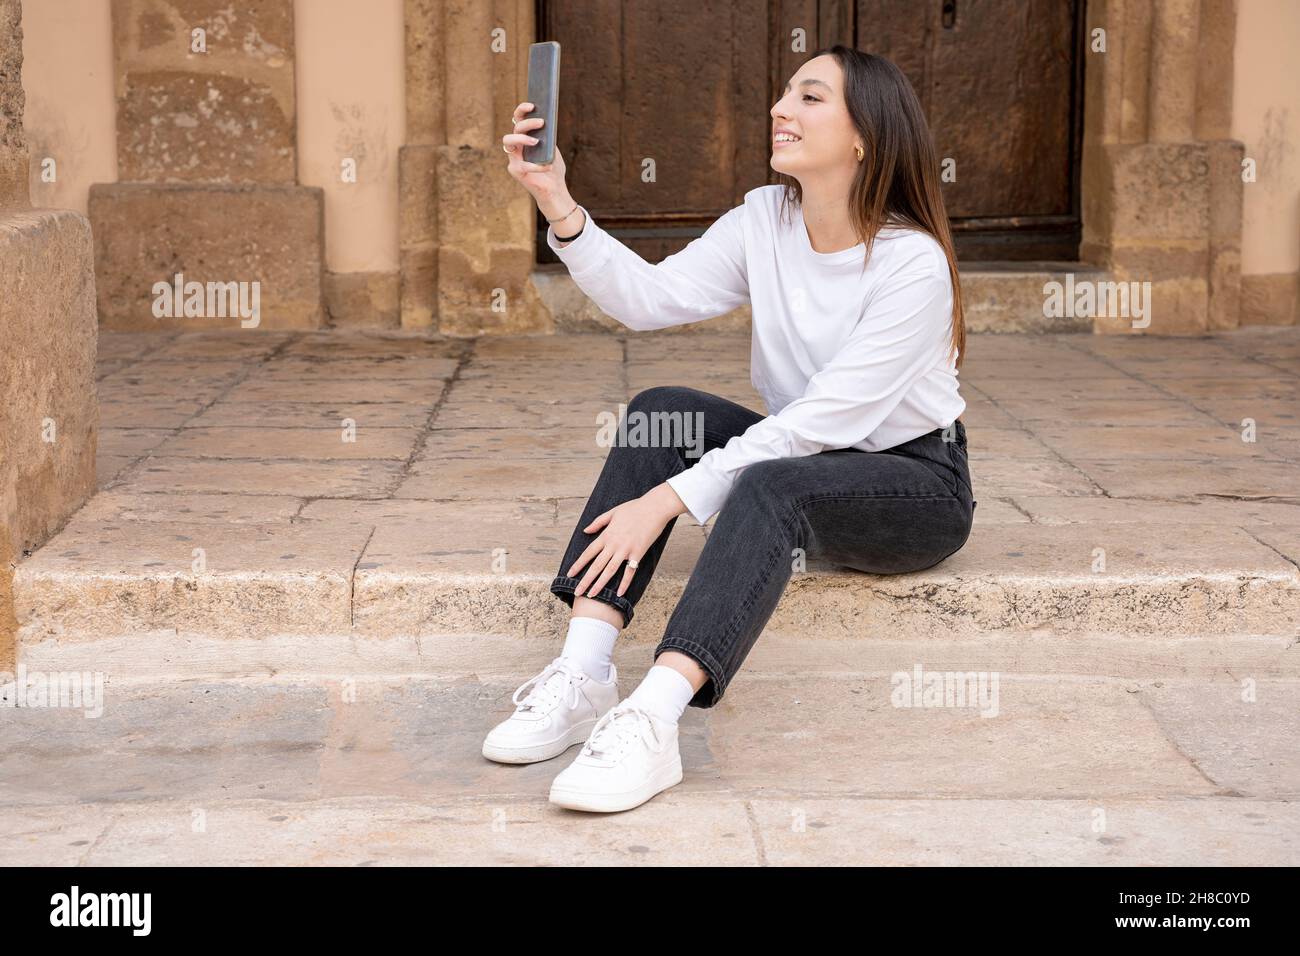 Junge lächelnde Frau der tausendjährigen Generation sitzt Selfie machen Stockfoto